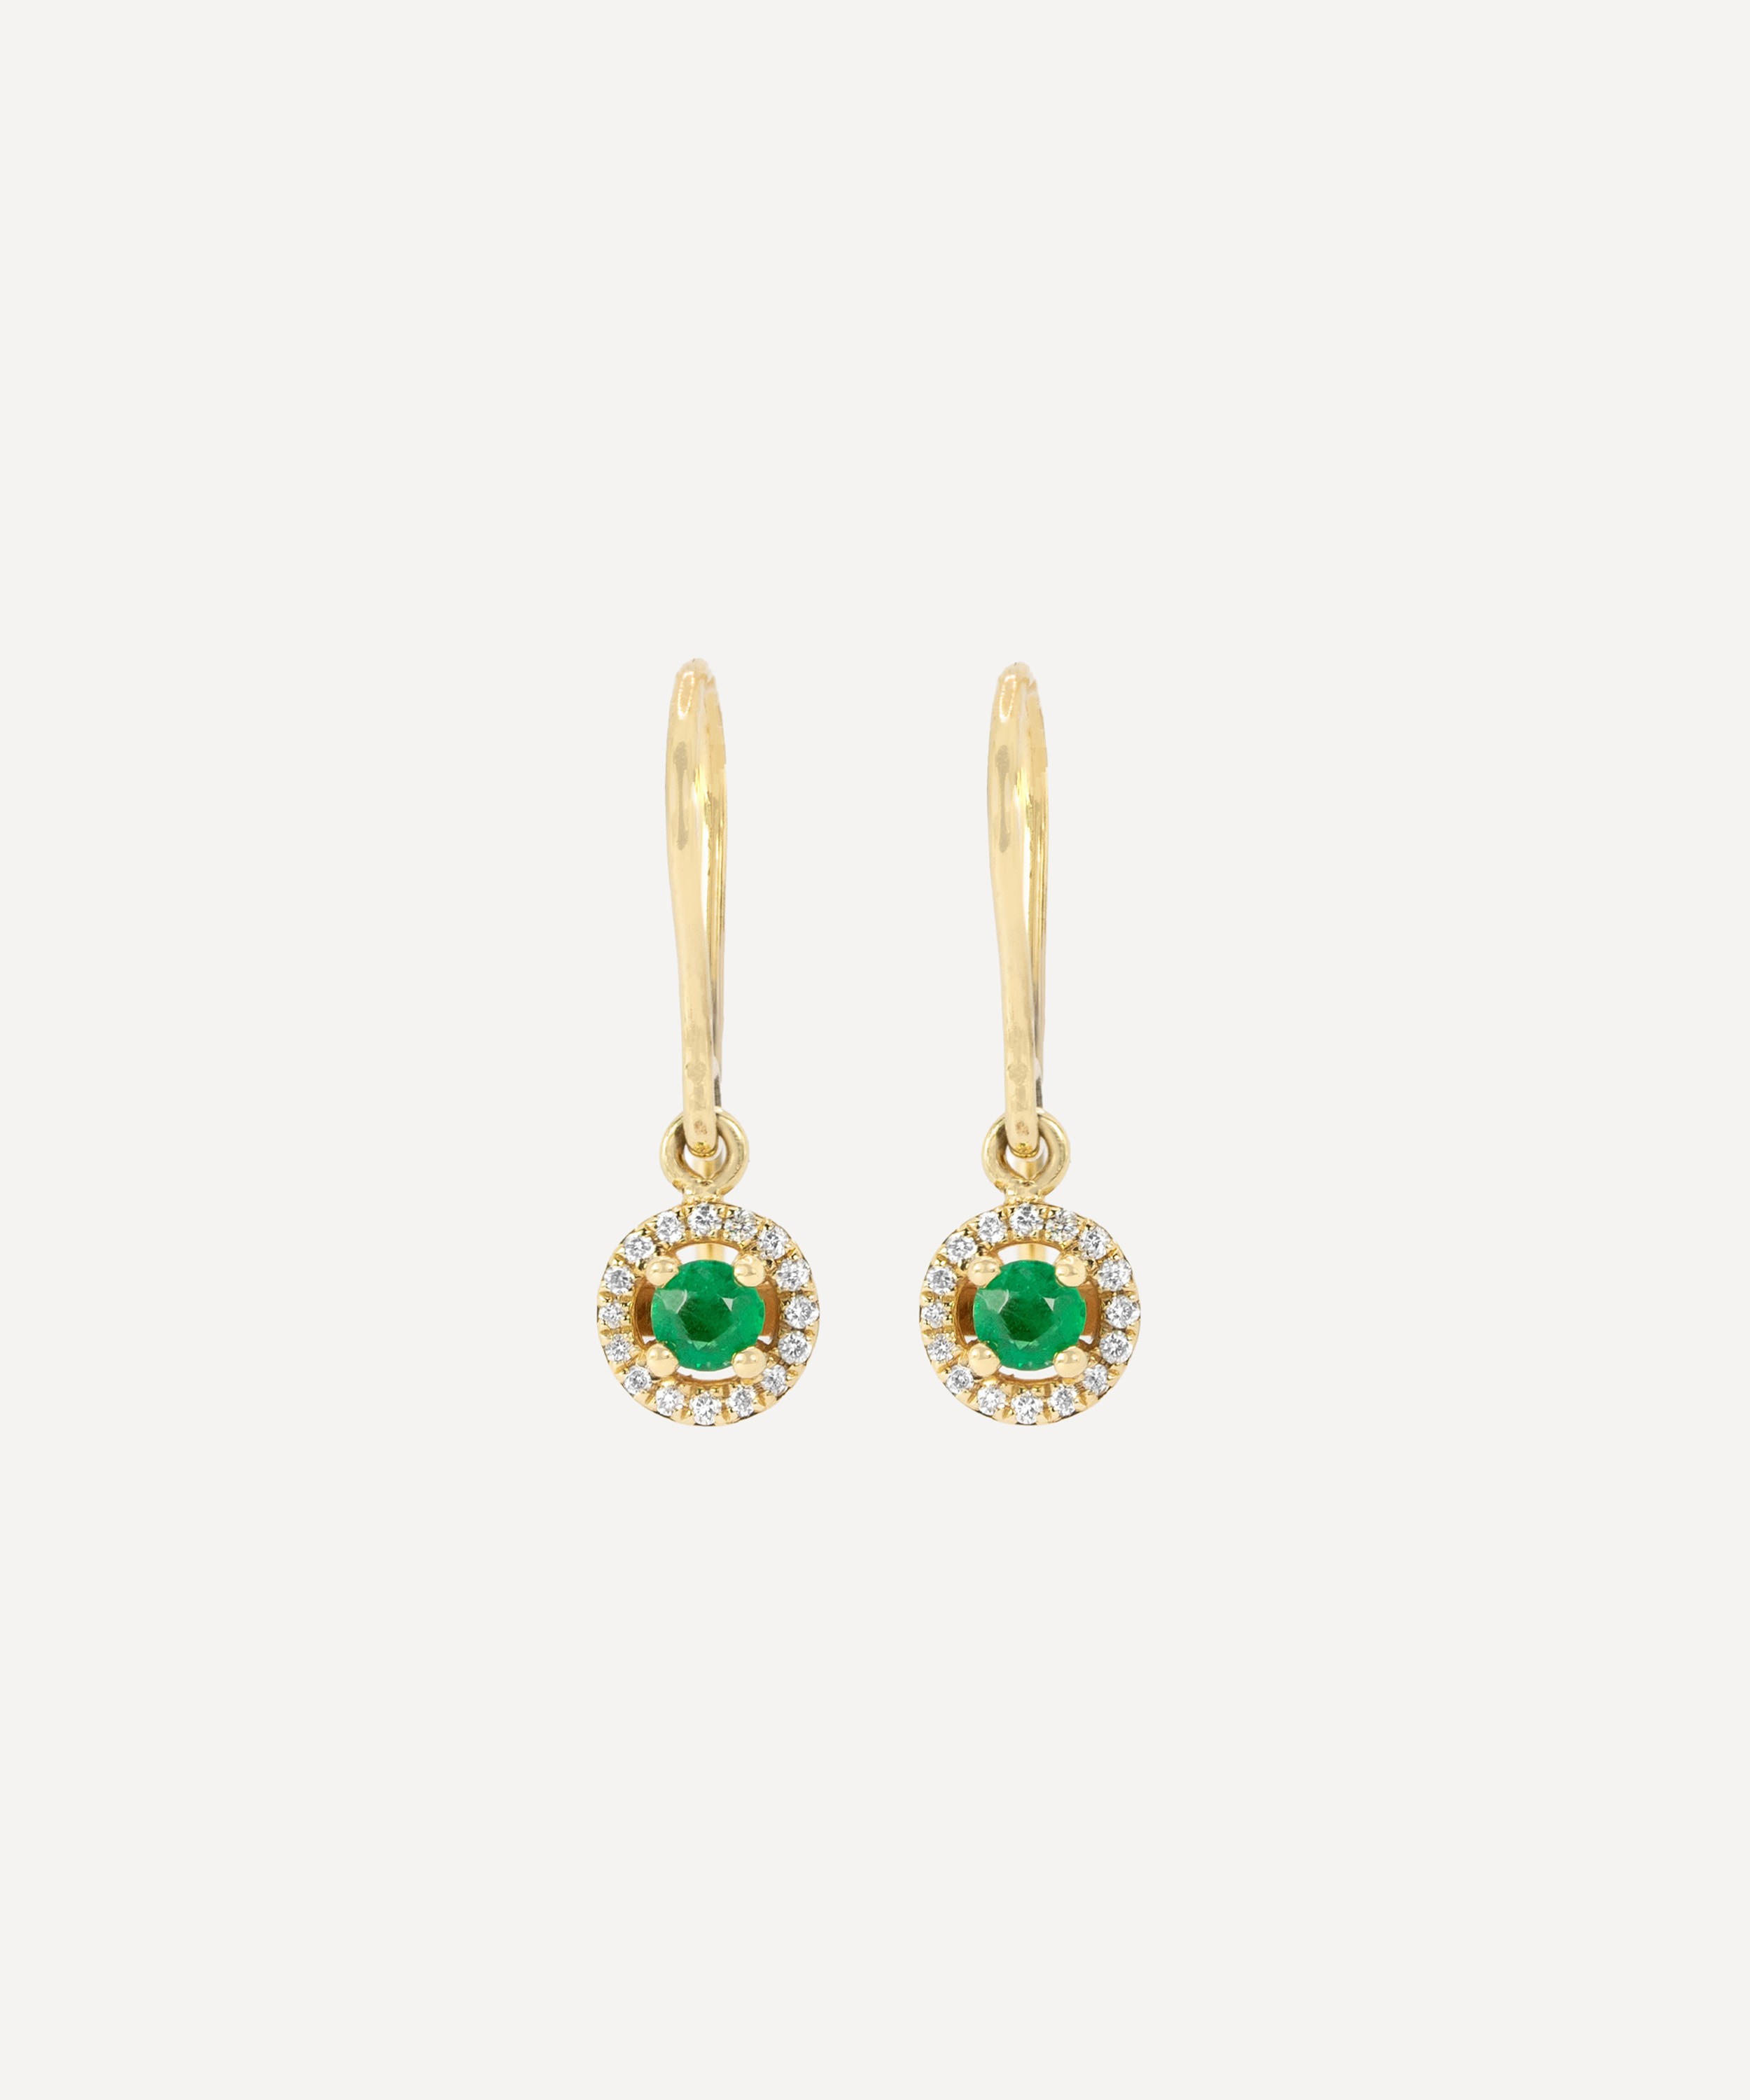 Kojis - 18ct Gold Emerald and Diamond Drop Earrings